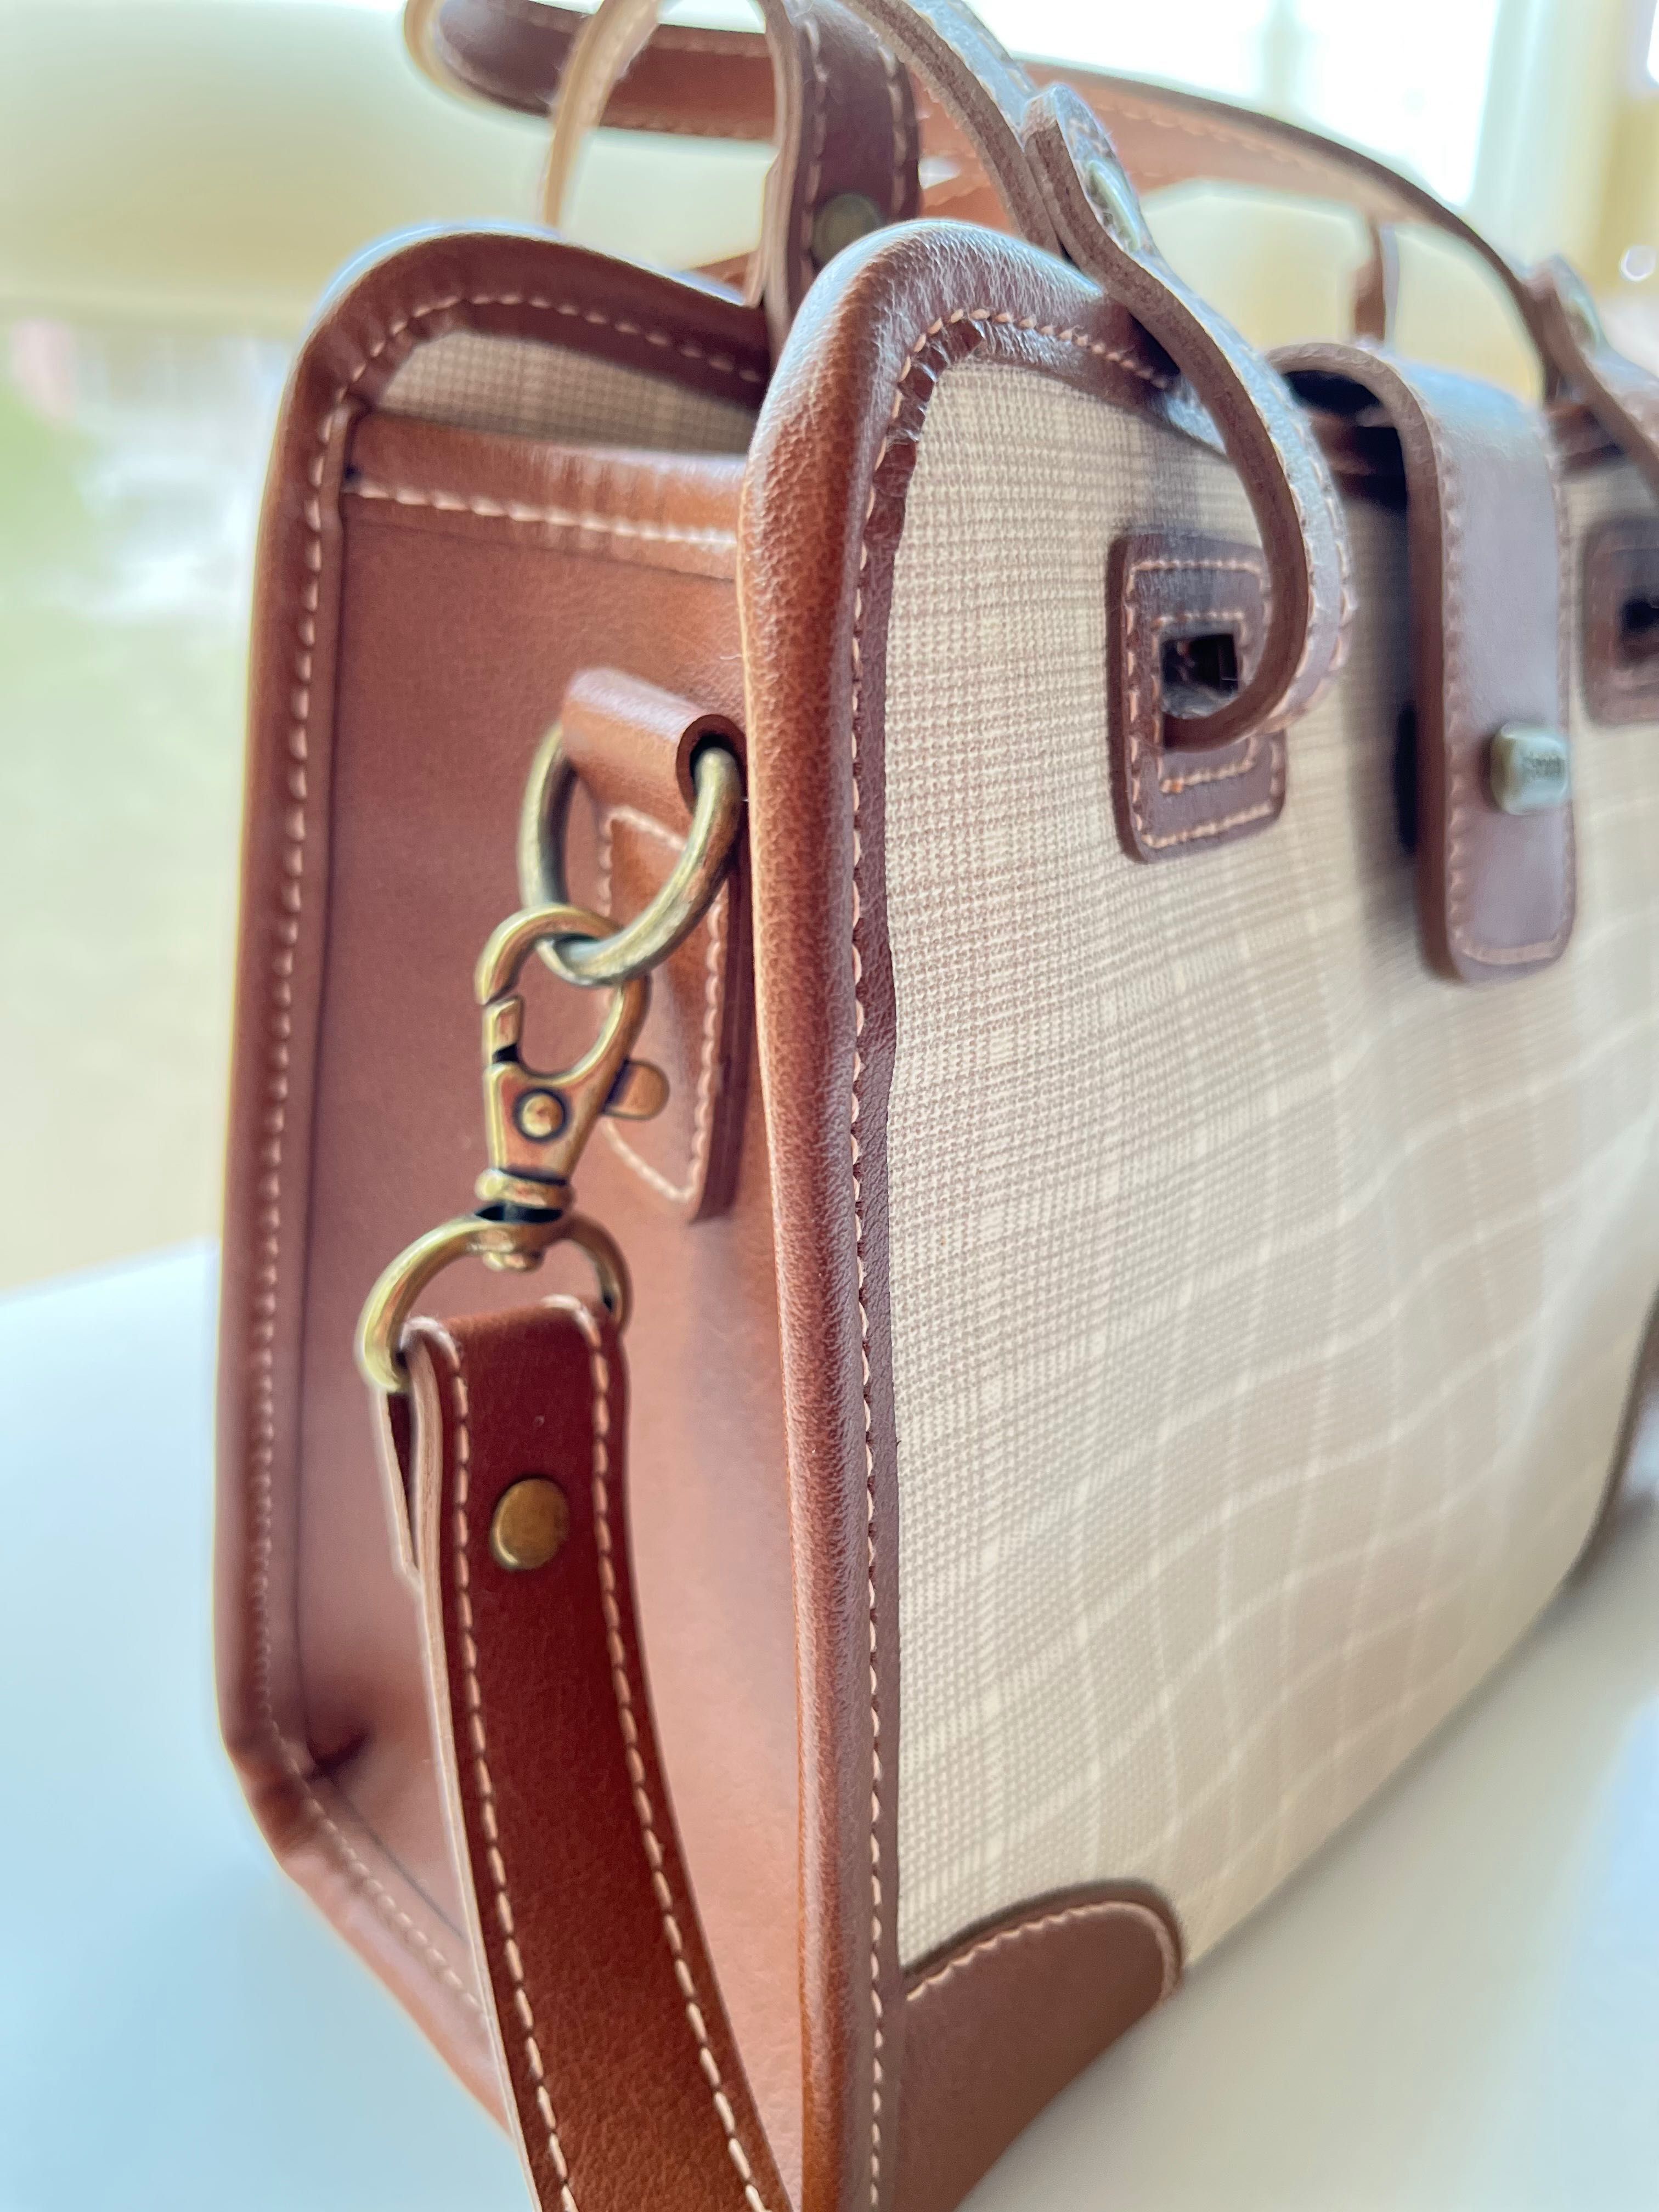 Стилна чанта Esprit - светло-кафяв и бежов цвят, с дълга дръжка.